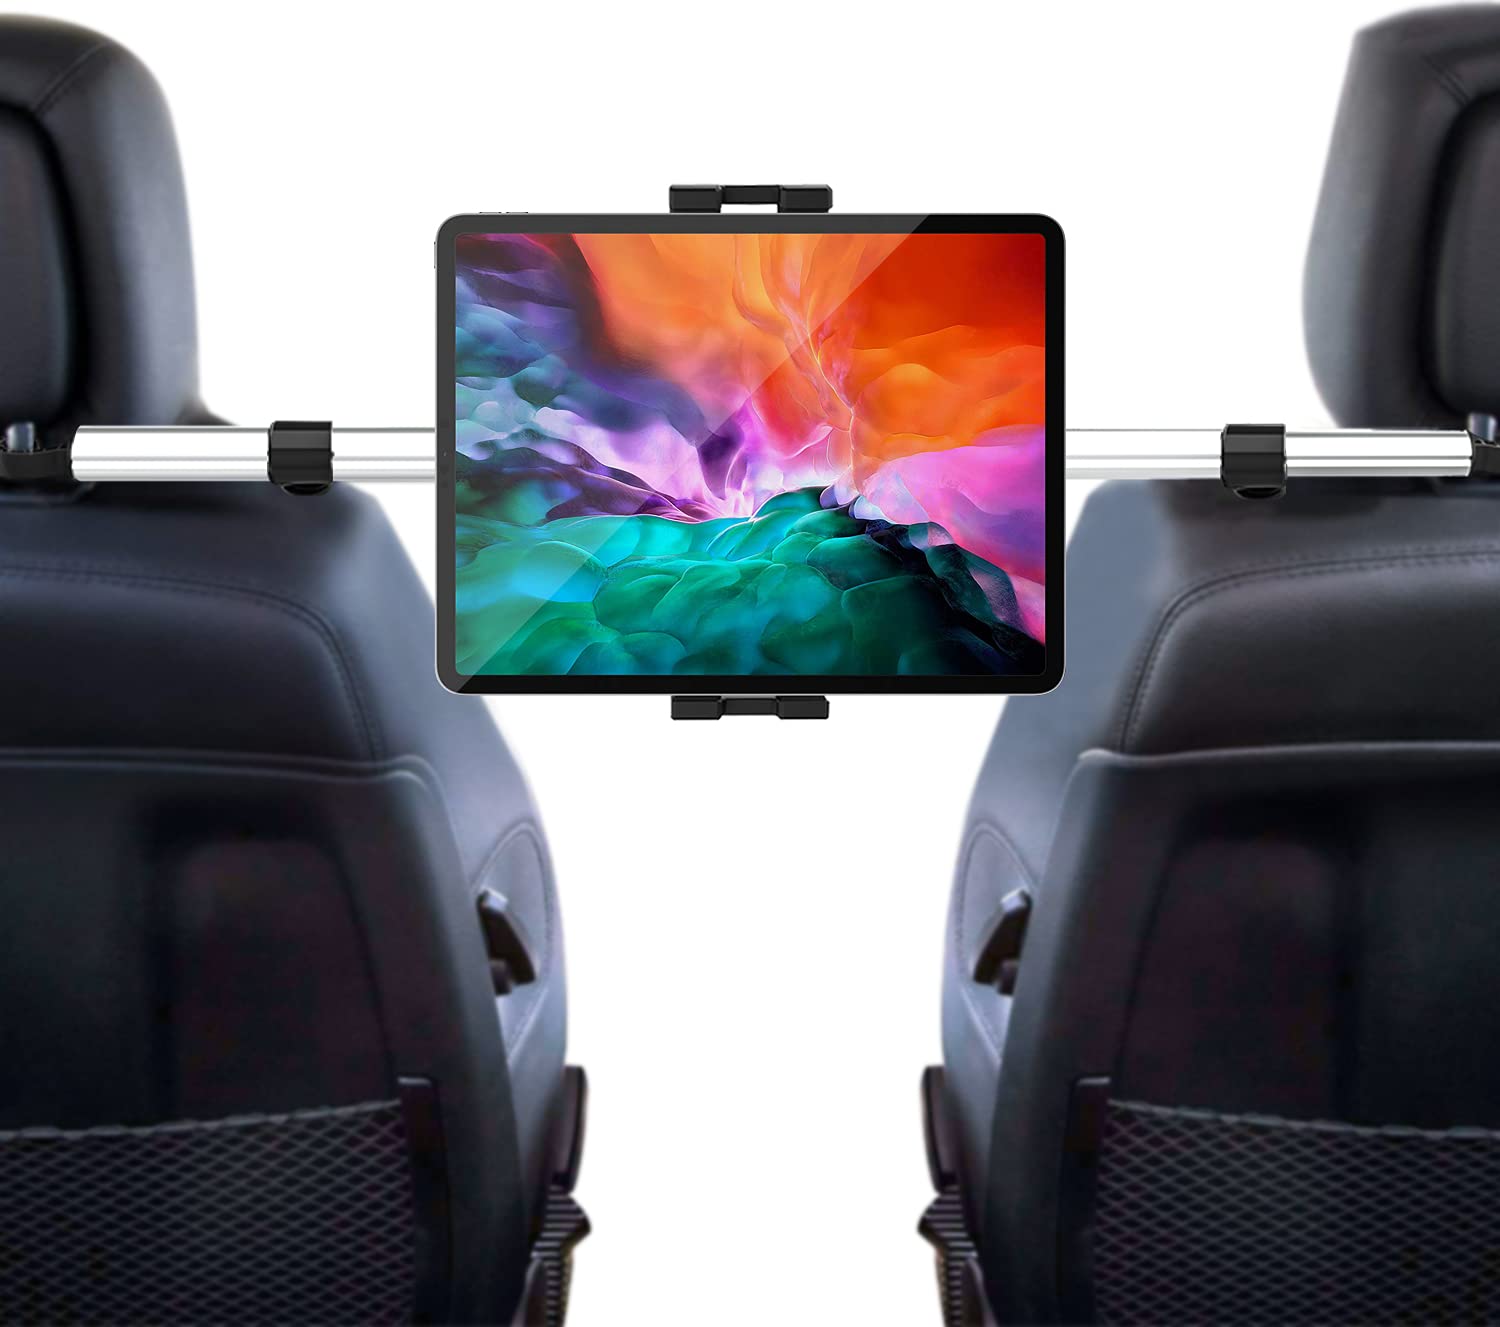 タブレット ヘッドレスト車載ホルダー 後部座席取付 安定性 防振でき 360度調節可 伸縮可 真ん中固定 タブレット スマホ スタンド  対応機種4-12.9インチデバイス iPad Pro 11 10.5 9.7 Air Mini iPhone 12 12  Pro 11